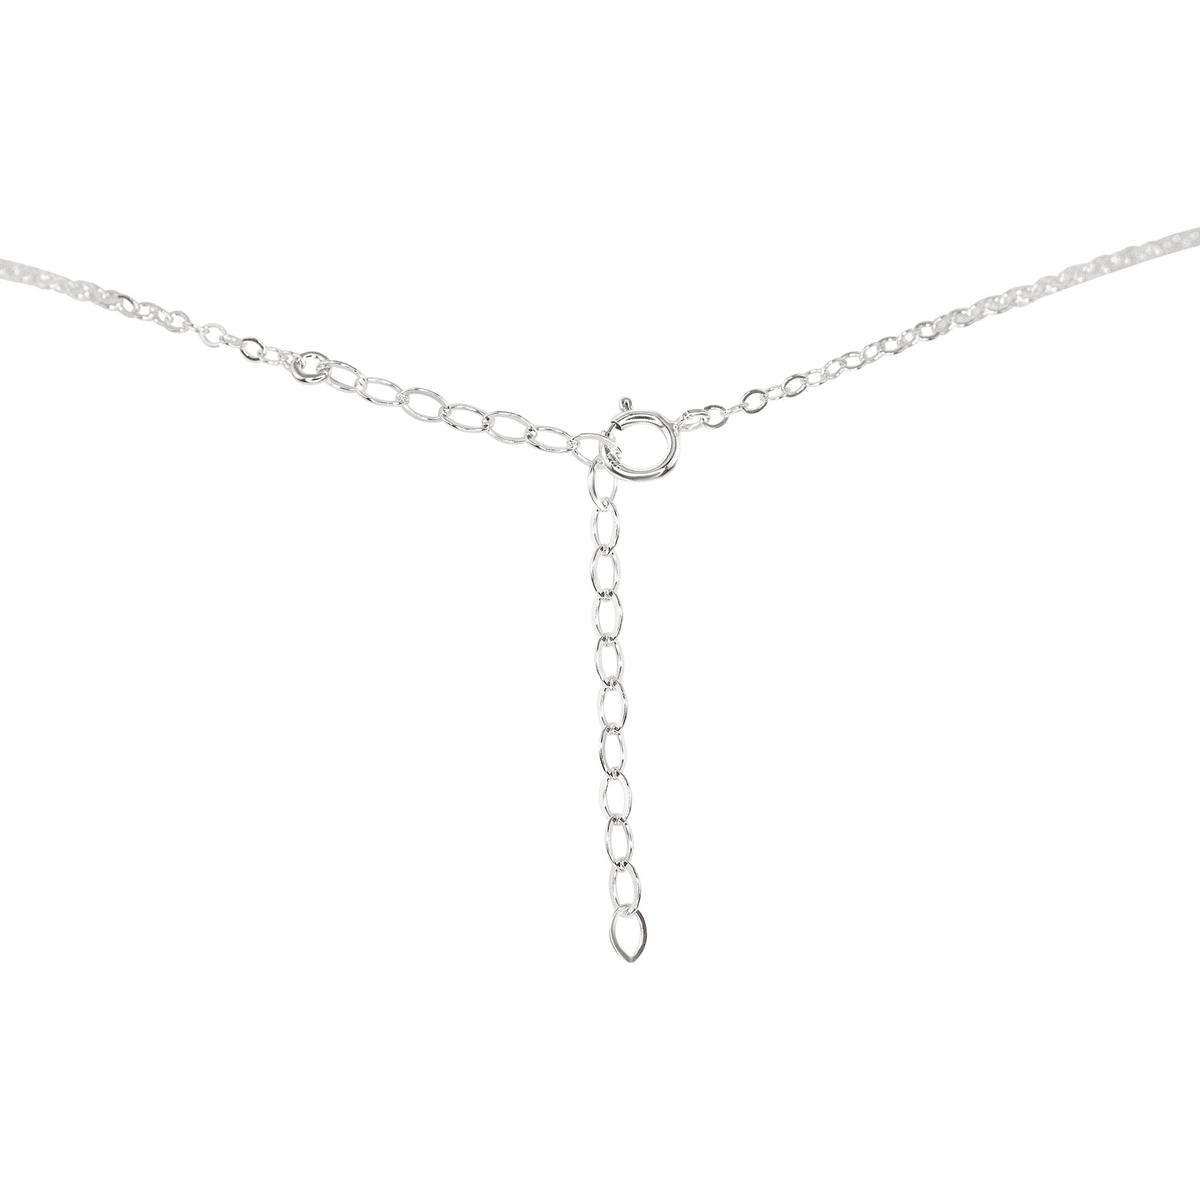 Dainty Aventurine Lariat Necklace - Dainty Aventurine Lariat Necklace - Sterling Silver - Luna Tide Handmade Crystal Jewellery